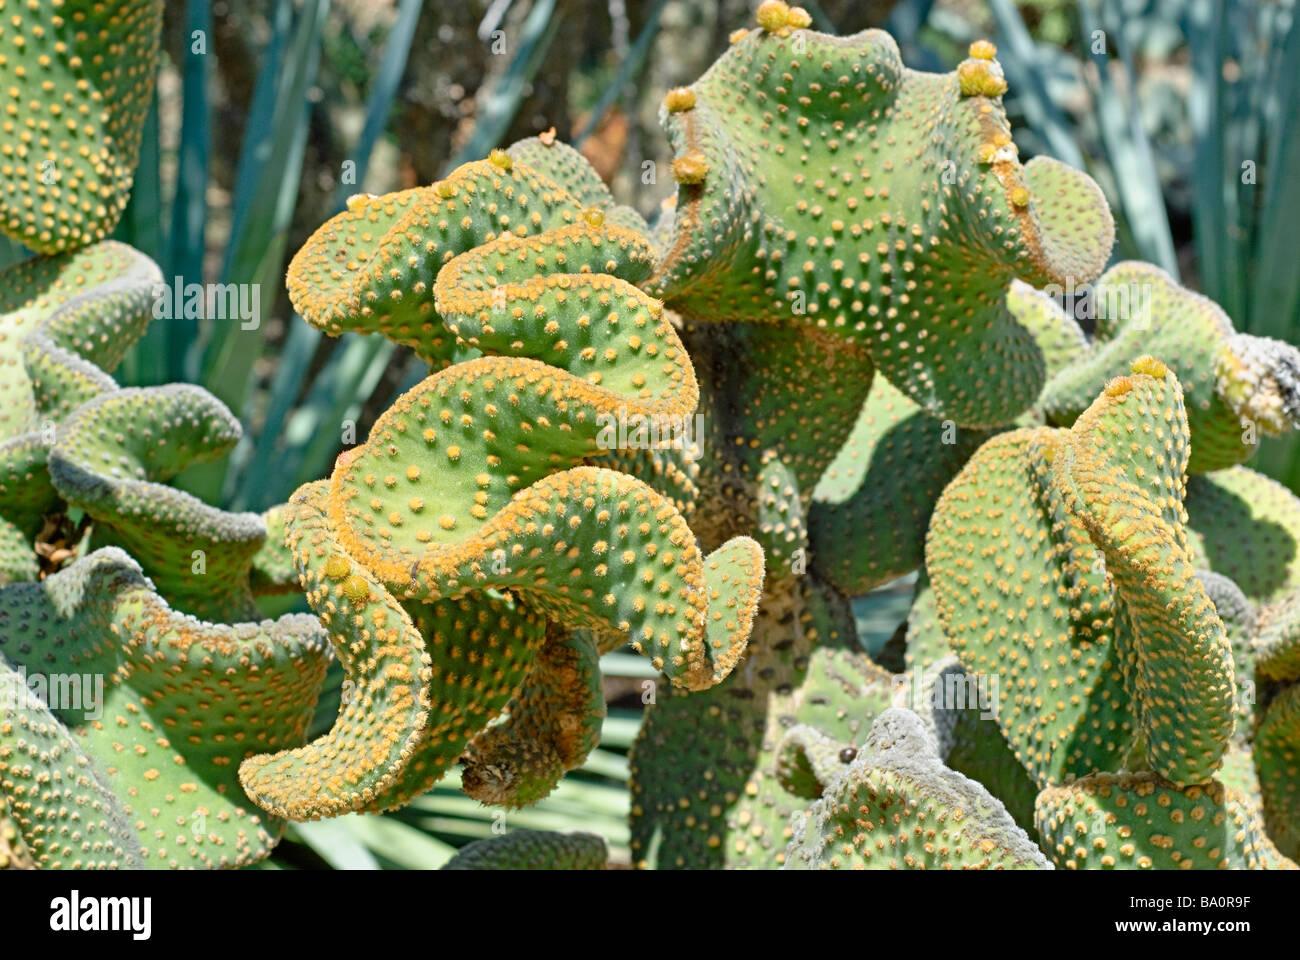 Polka Dot Cactus, Opuntia microdasys Stock Photo